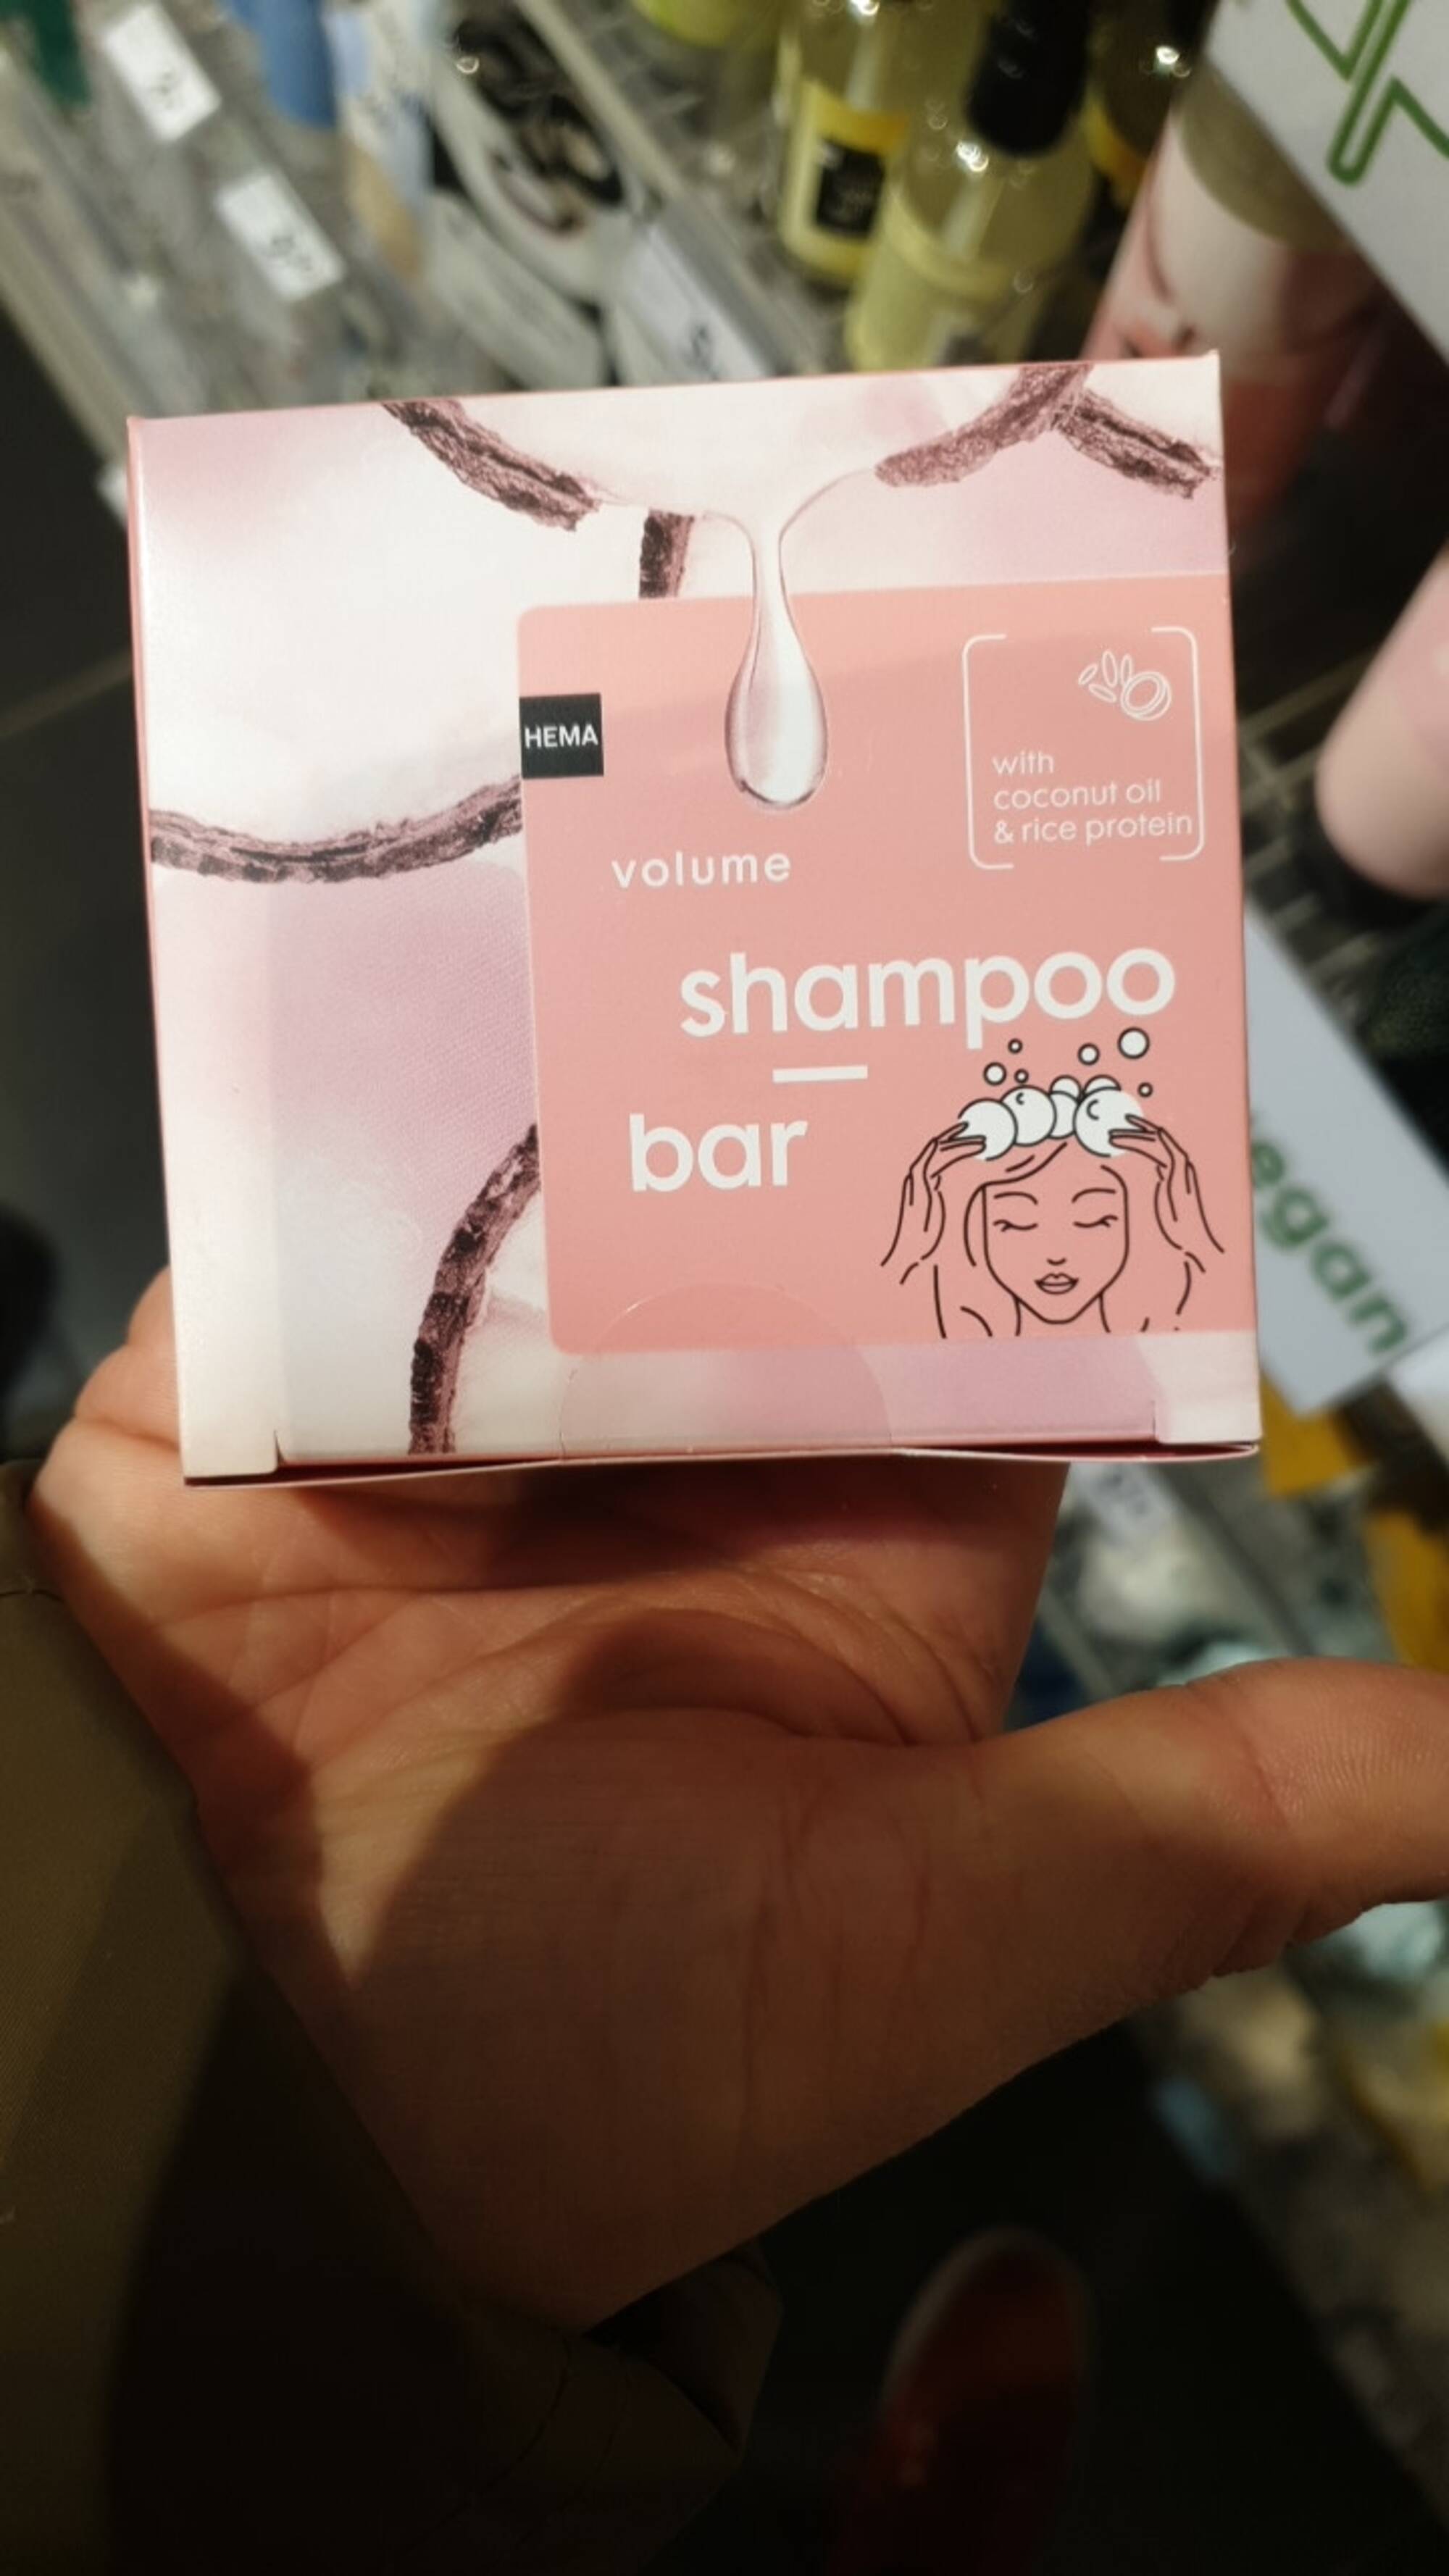 HEMA - Shampoo bar